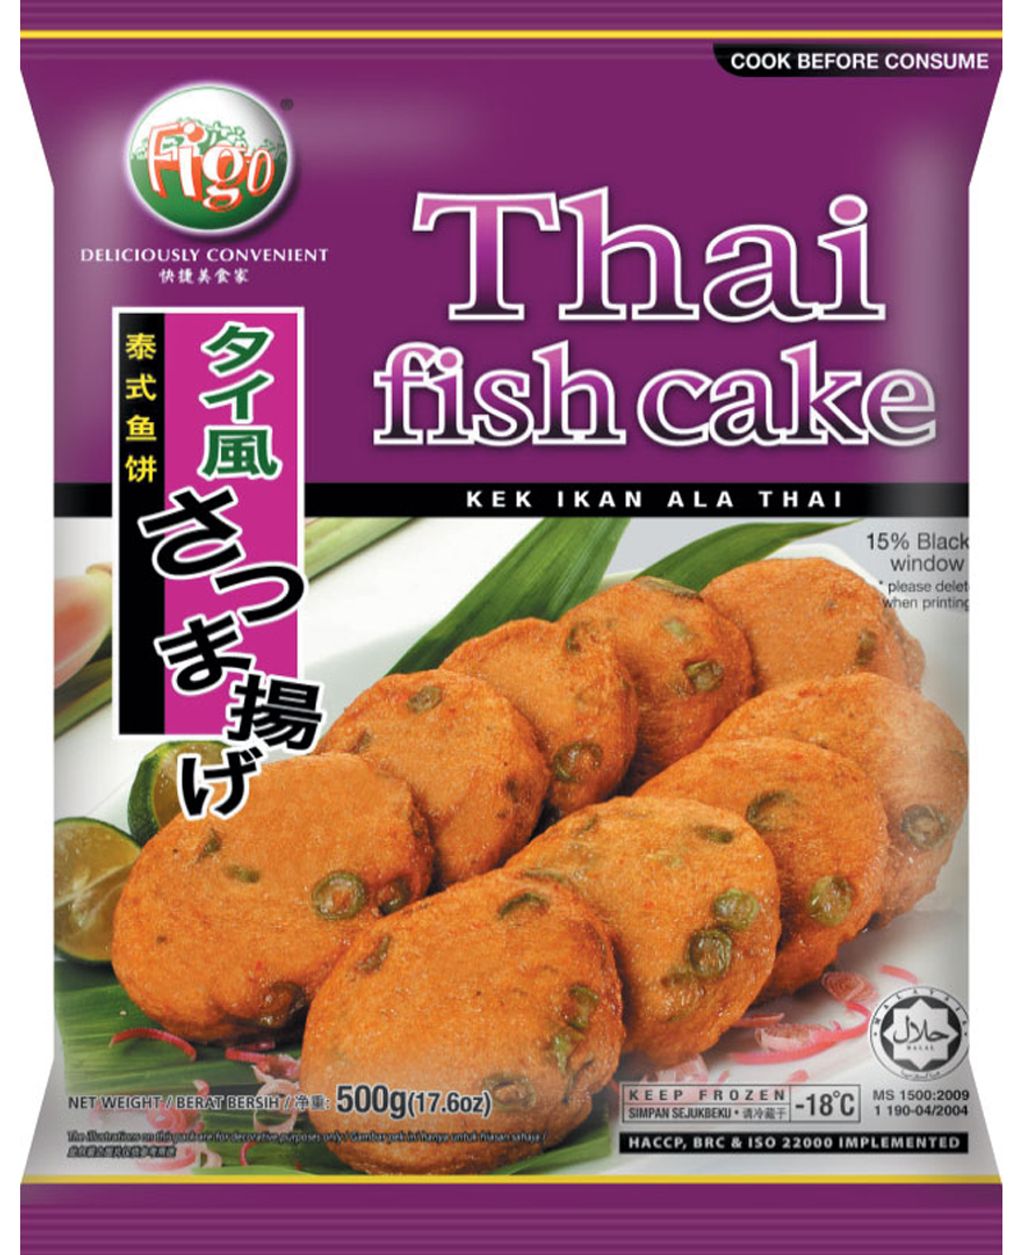 figo-thai fish cake.jpg